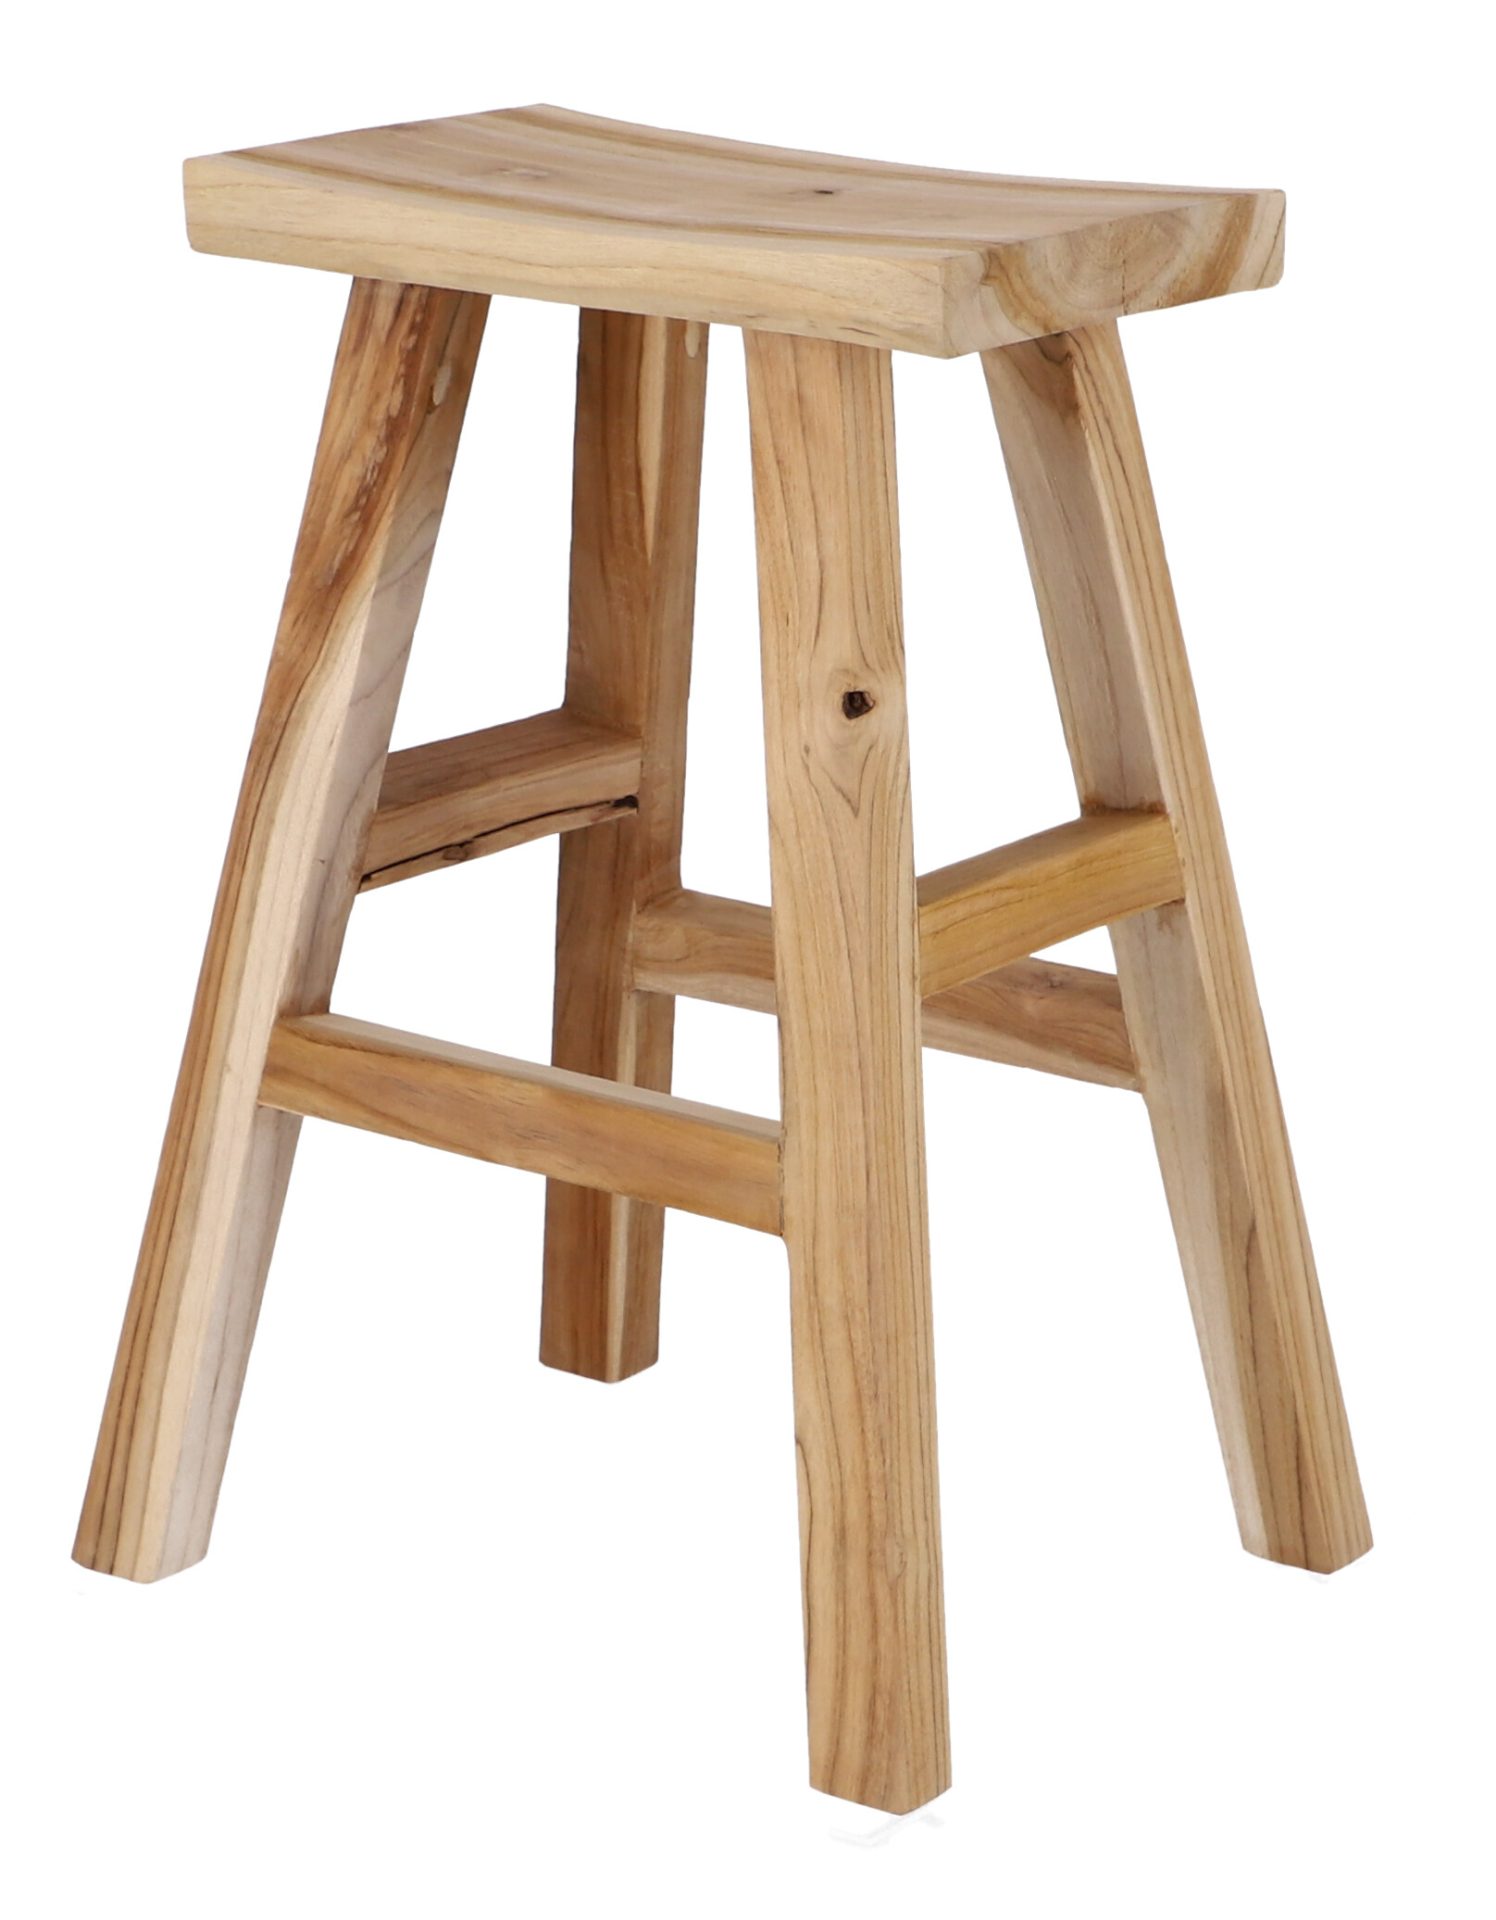 Der Barhocker Curve wurde aus Teakholz gefertigt und besitzt eine Höhe von 62 cm. Der Stuhl hat ein massives Design und ist ein Produkt der Marke Jan Kurtz.